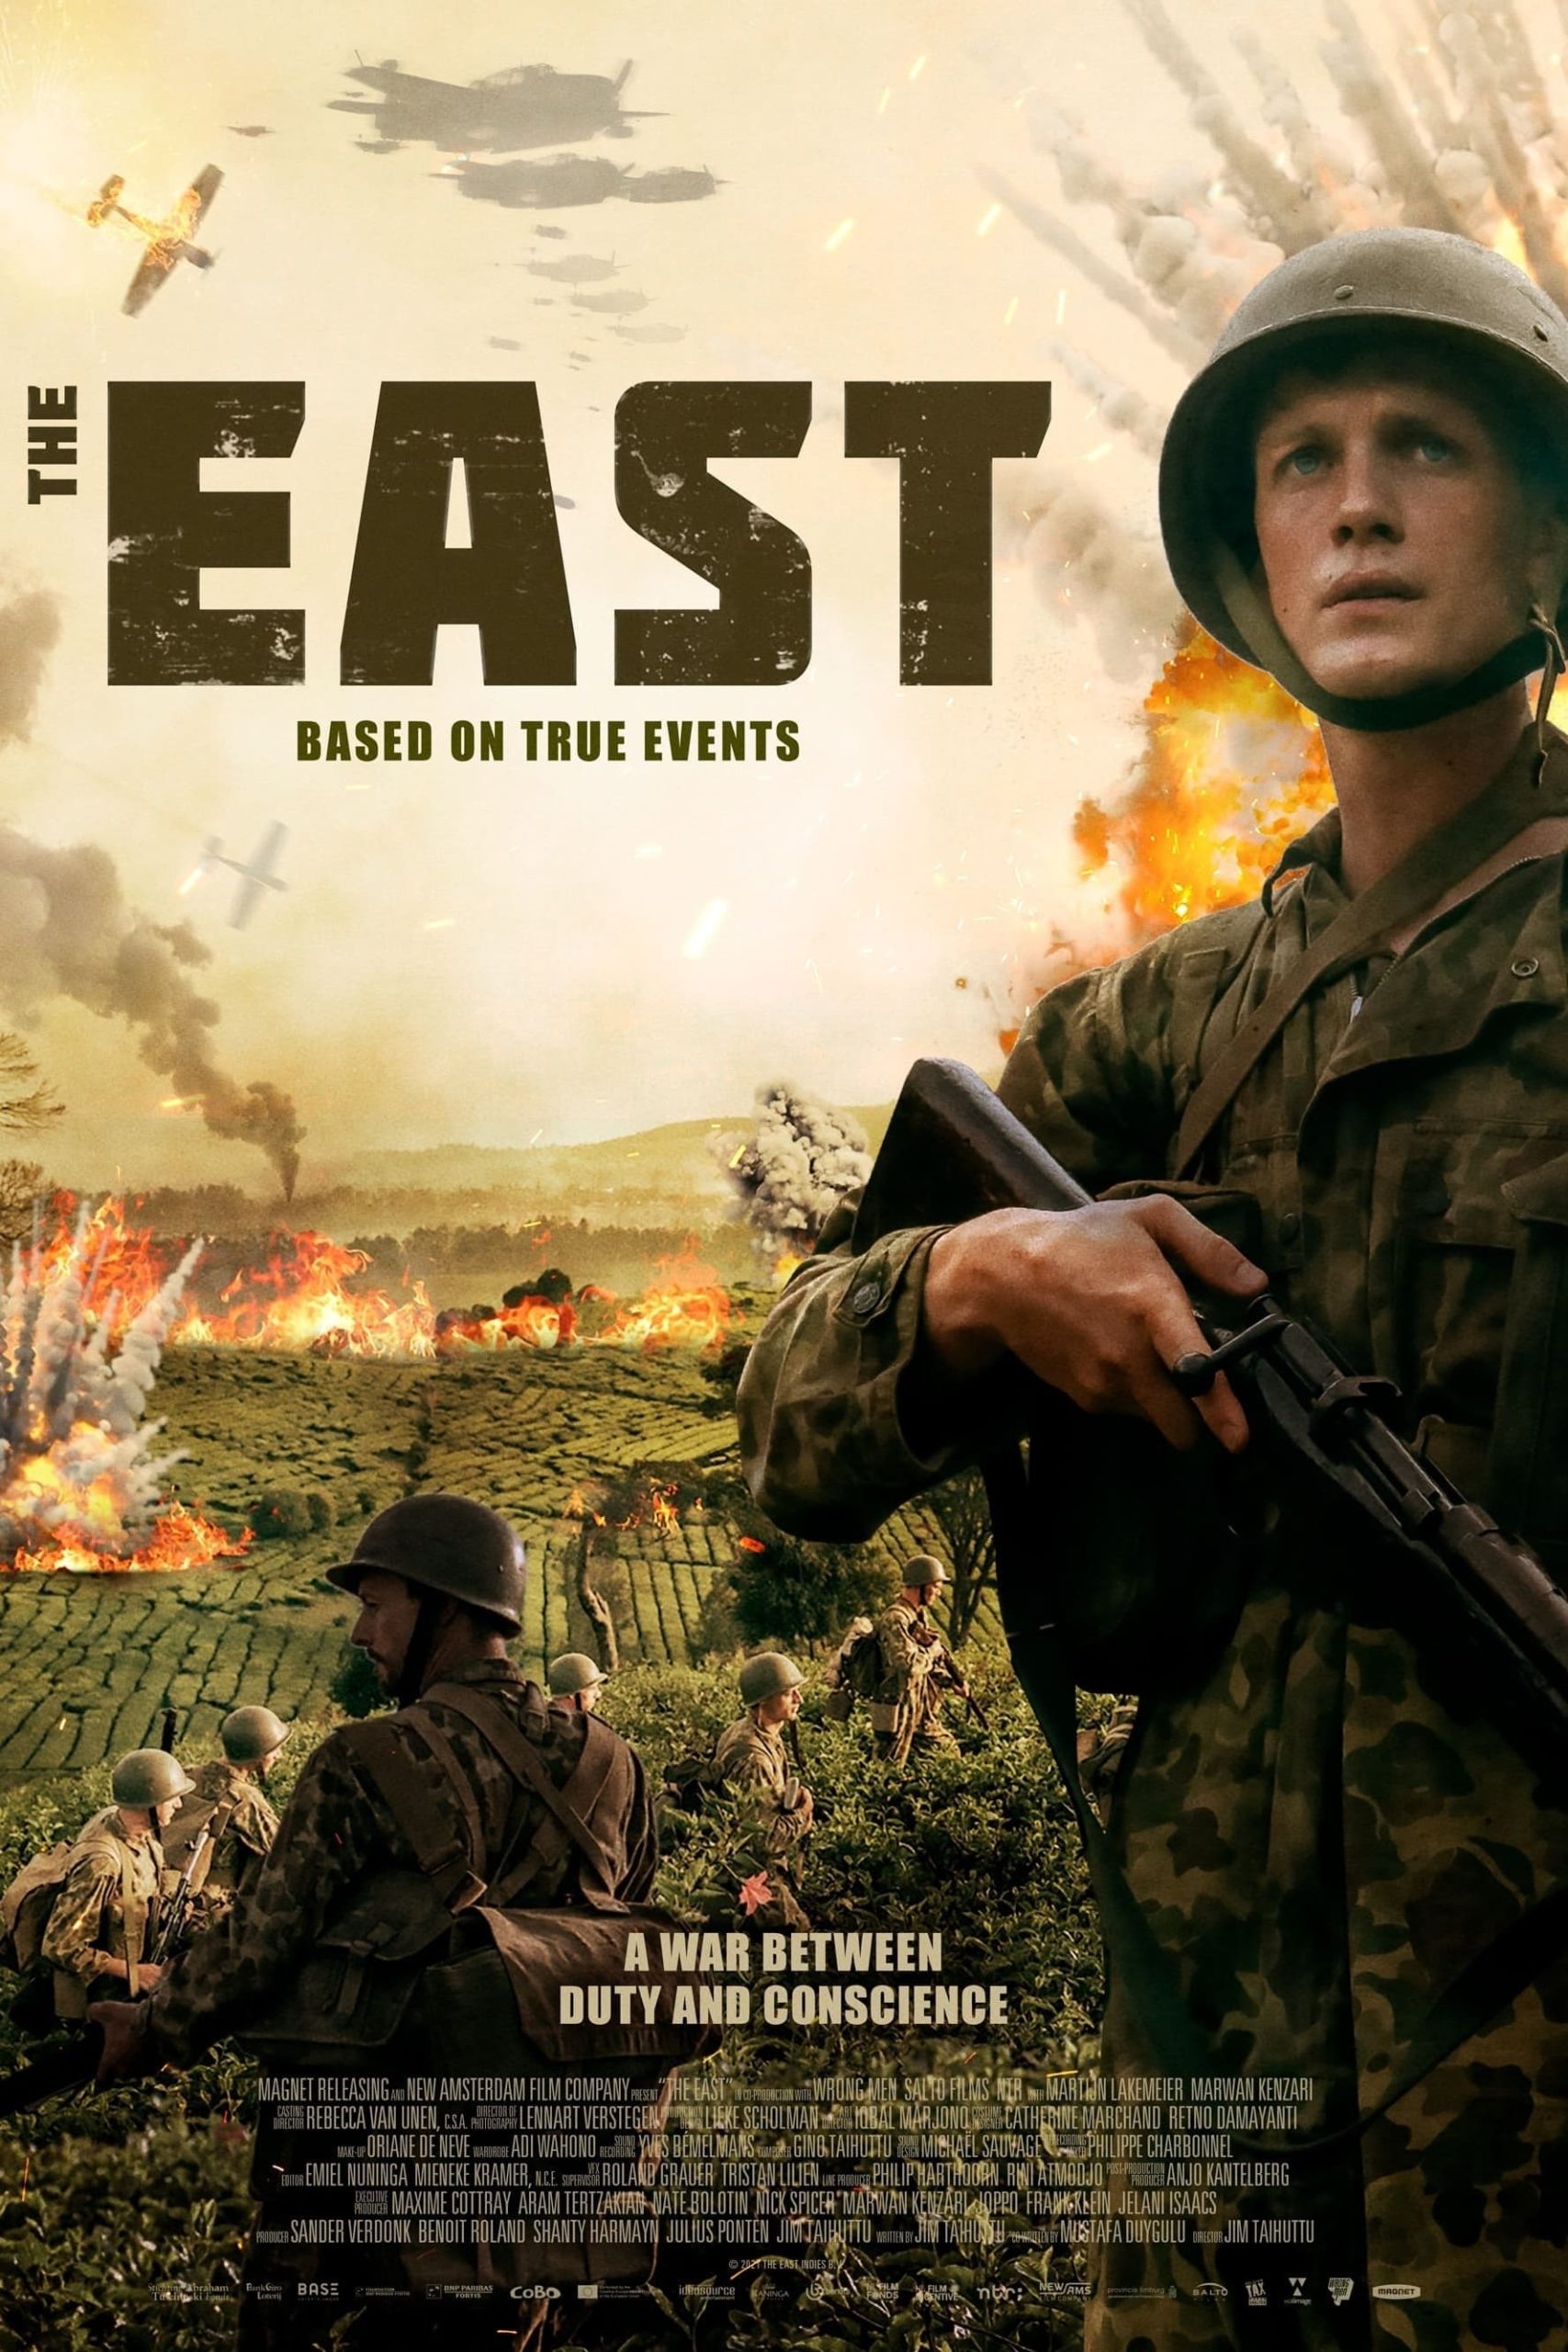 دانلود فیلم The East 2020 با دوبله فارسی